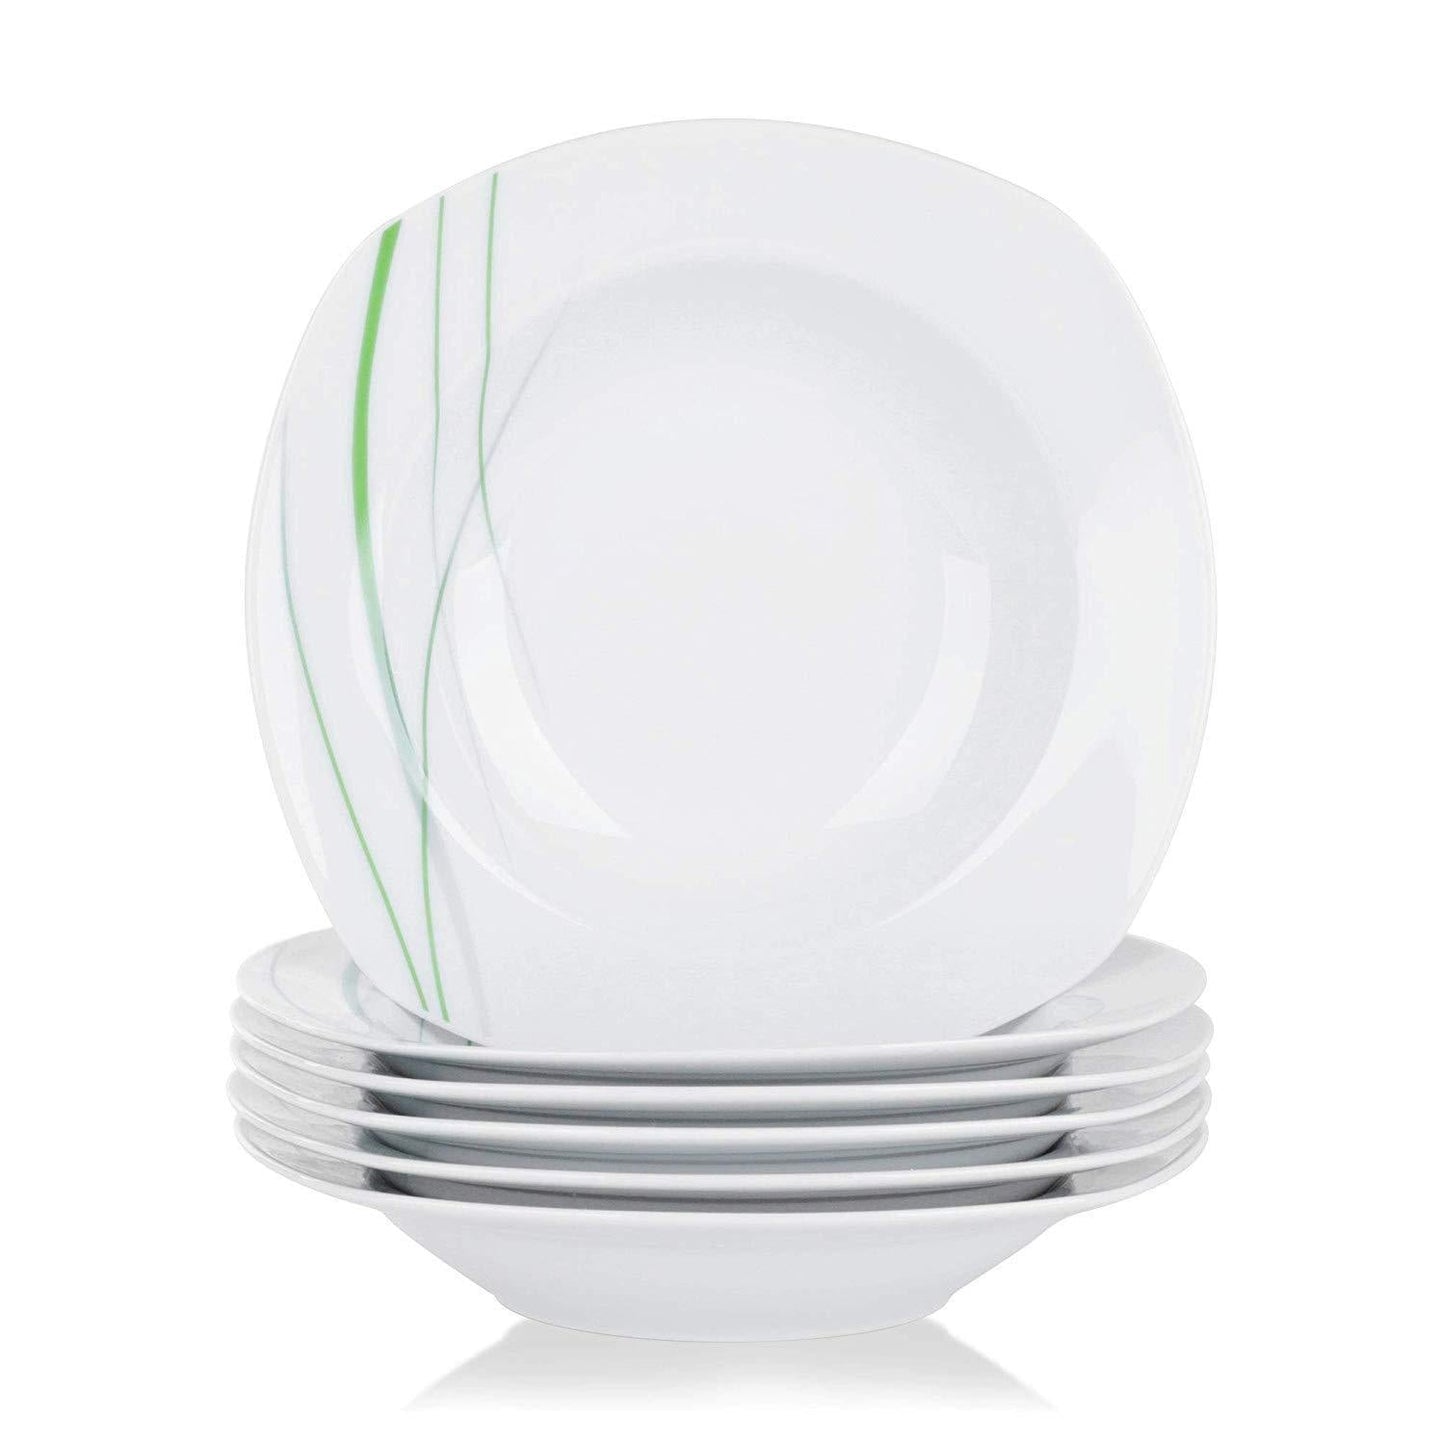 6-Piece 8.5" AVIVA Porcelain Soup Plate/Dinner Plates Set - Nordic Side - 85, AVIVA, Bowl, Ceramic, Deep, Dinner, Kitchen, Piece, Plate, Plates, Porcelain, Salad, Set, Snack, Soup, VEWEET